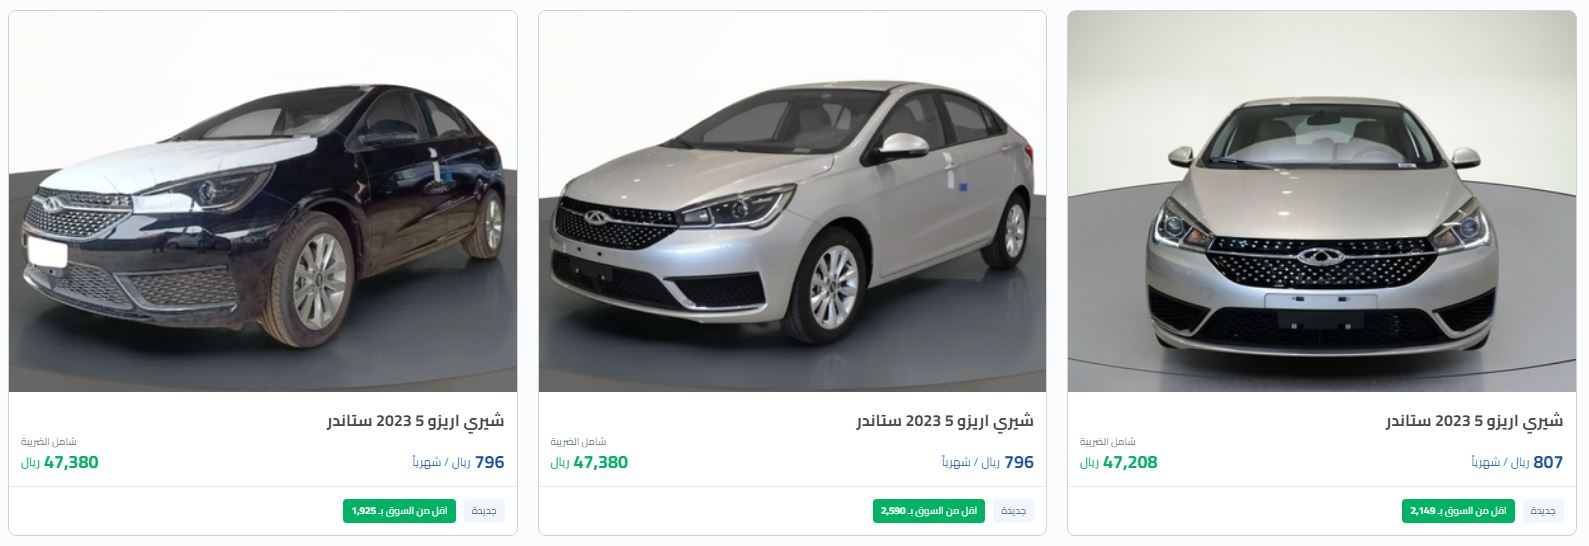 أرخص عروضات سيارات شيري الجديدة 2022 Saudi